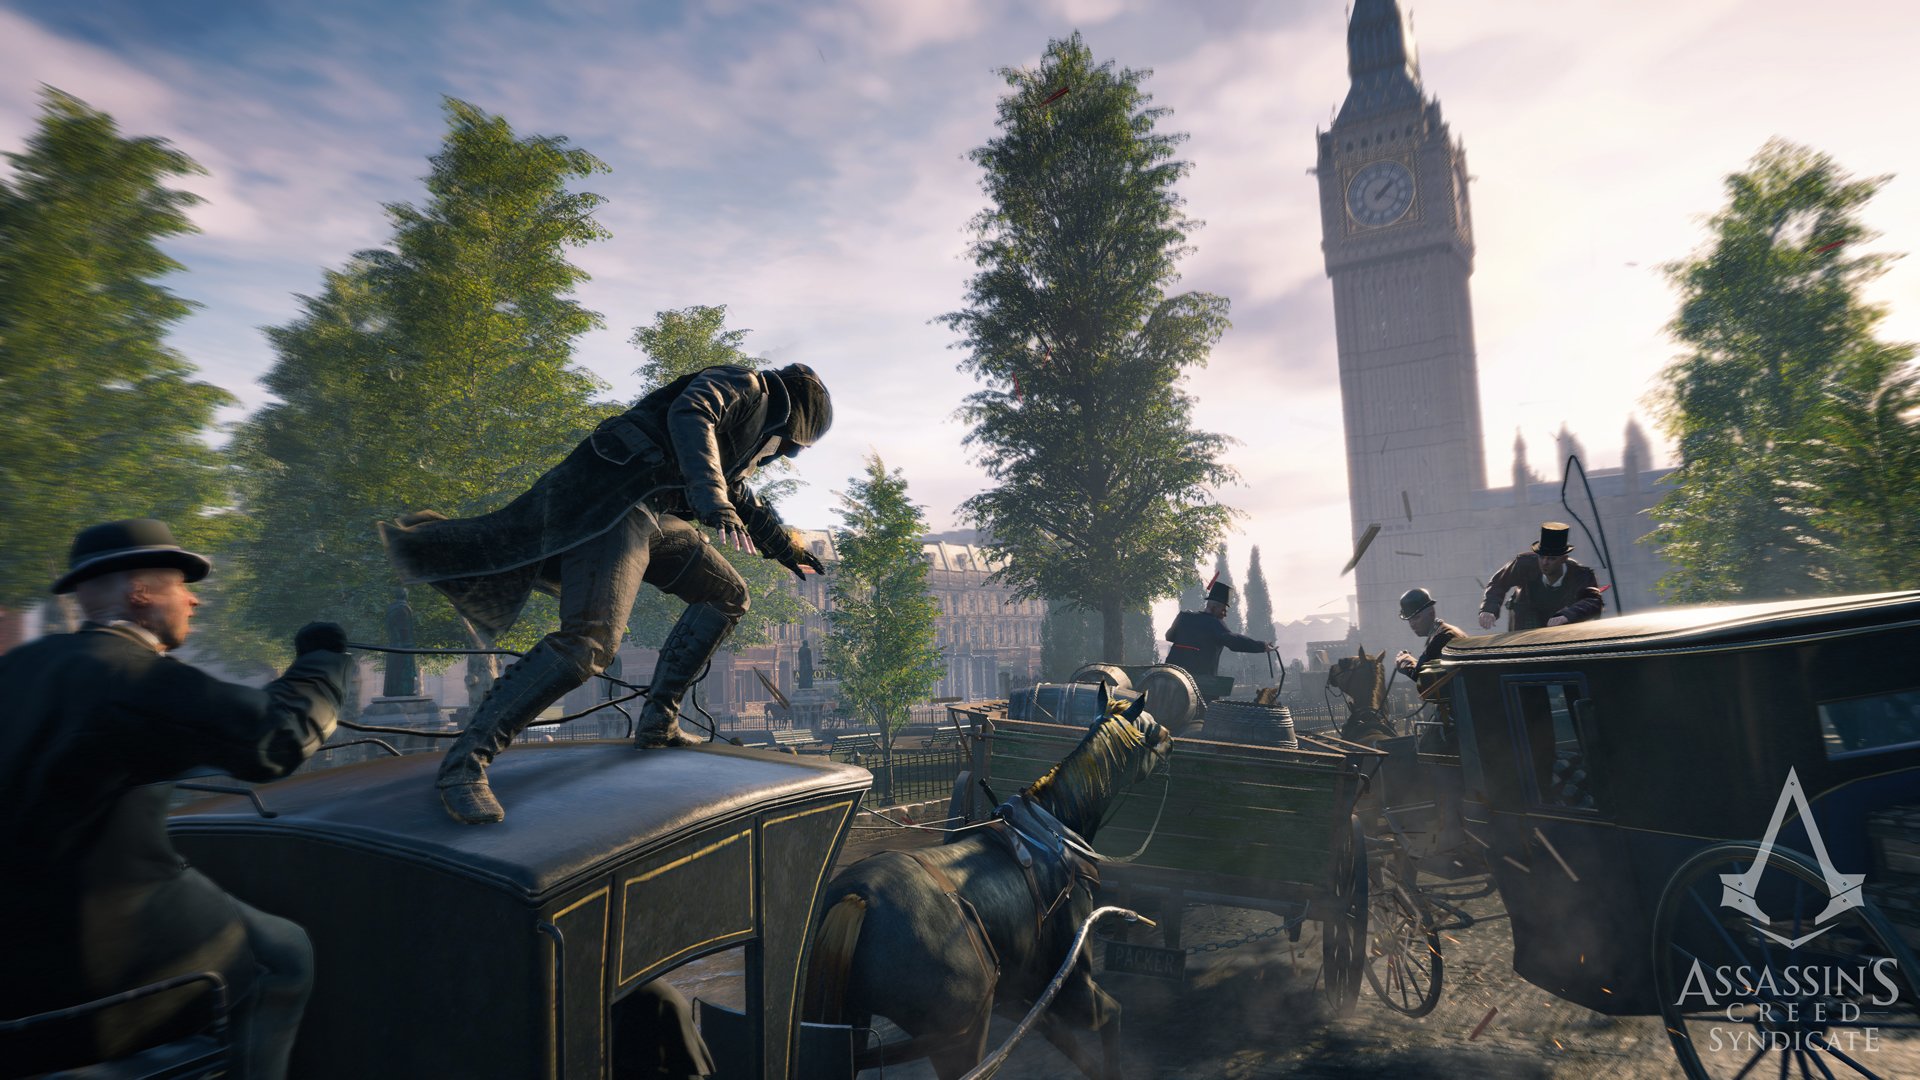 Obrázky z Assassin's Creed: Syndicate ve vysokém rozlišení + datum vydání